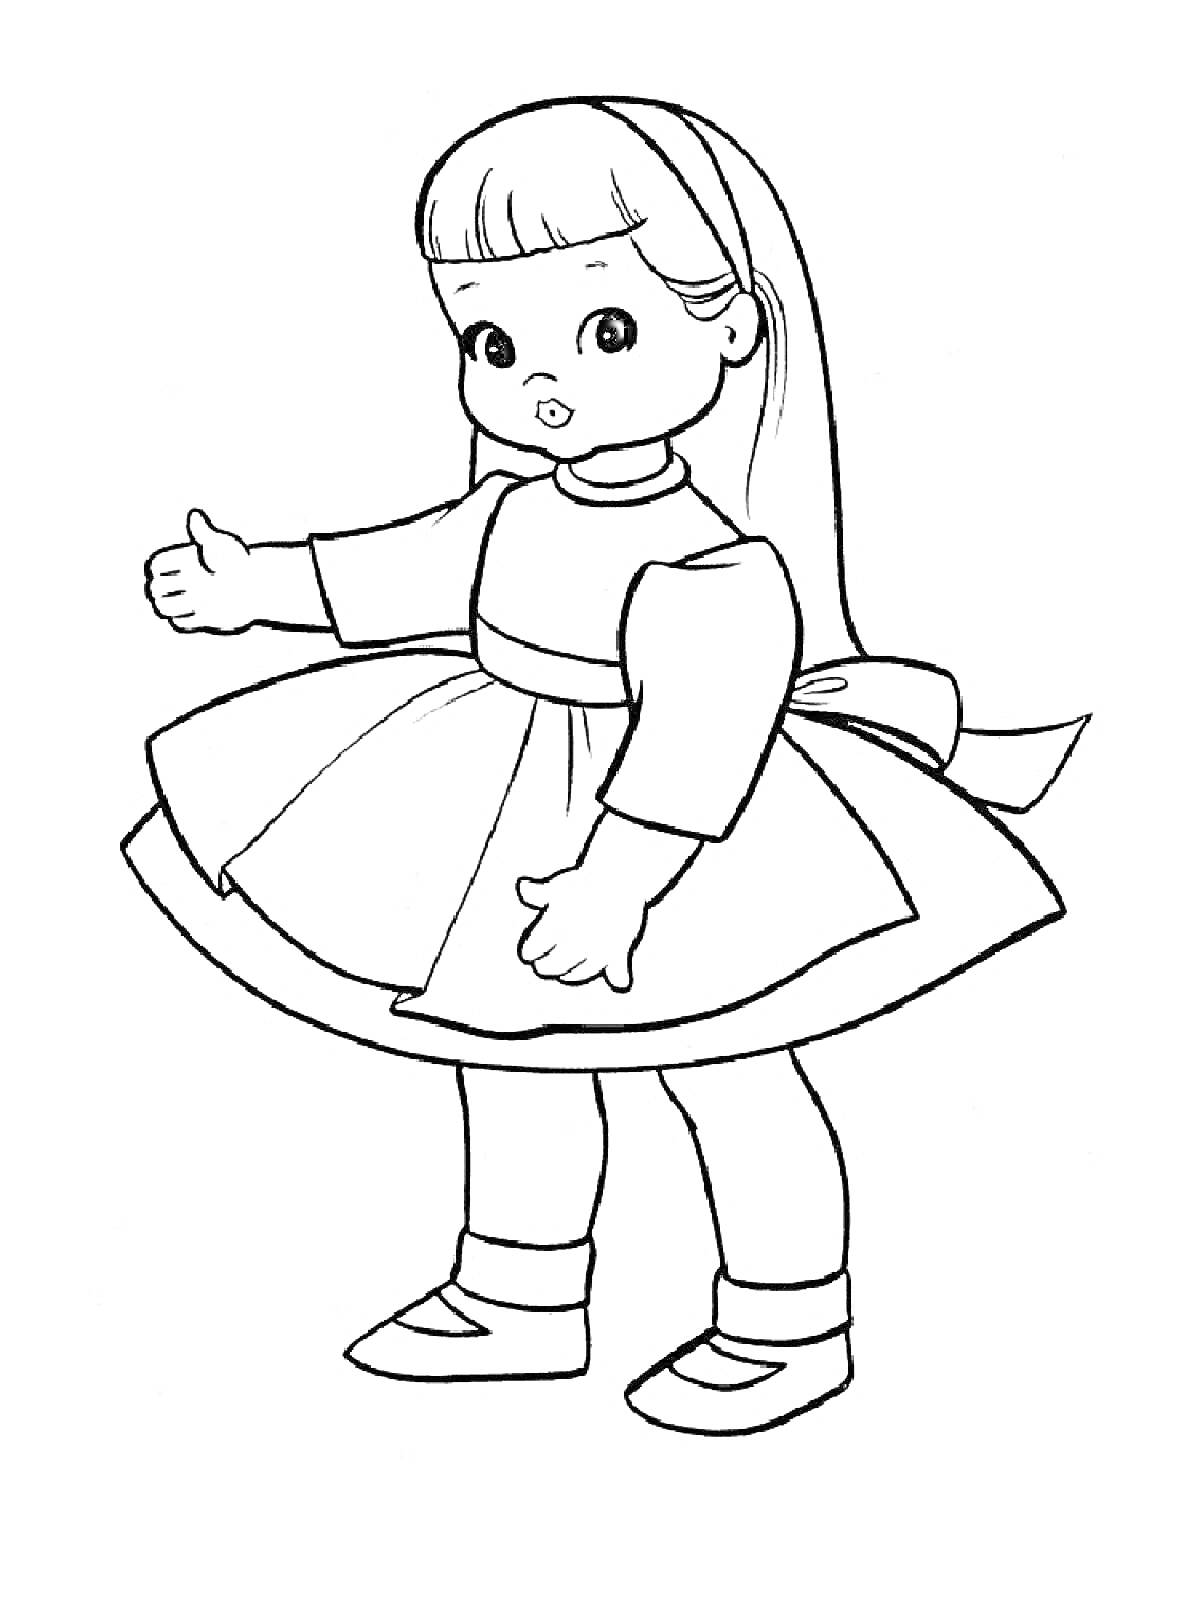 Кукла в платье с поясом и бантом, с длинными волосами и ободком